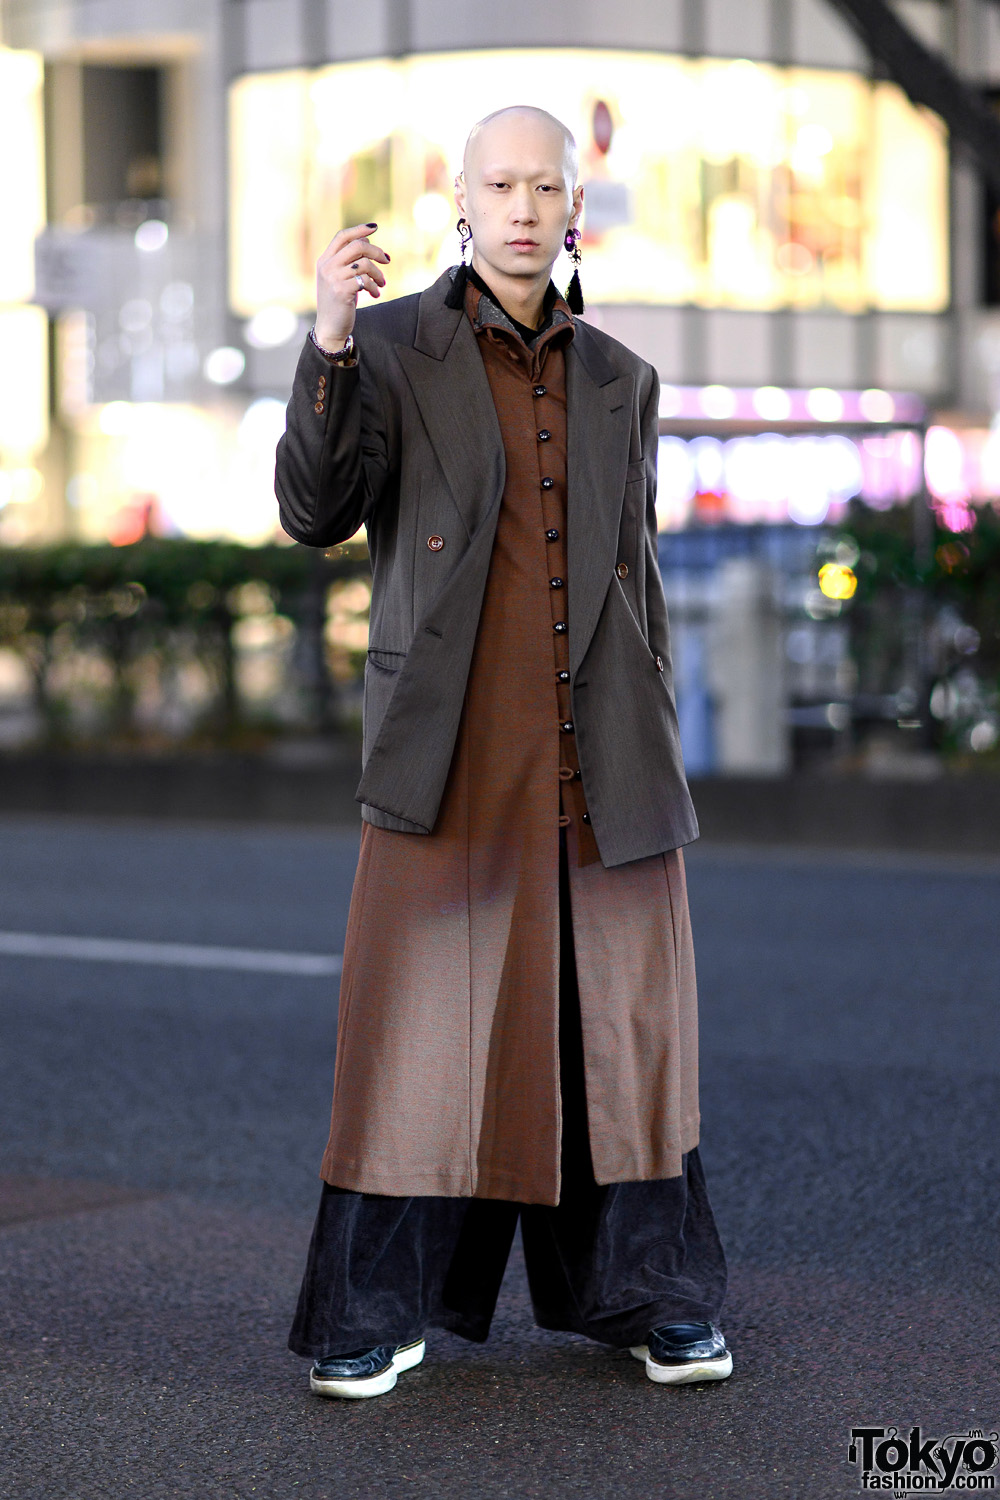 Harajuku Model/Musician in Vintage Monochrome Streetwear w/ Kenzo Coat, Wide Leg Pants, Tassel Earrings & Y-3 Loafers